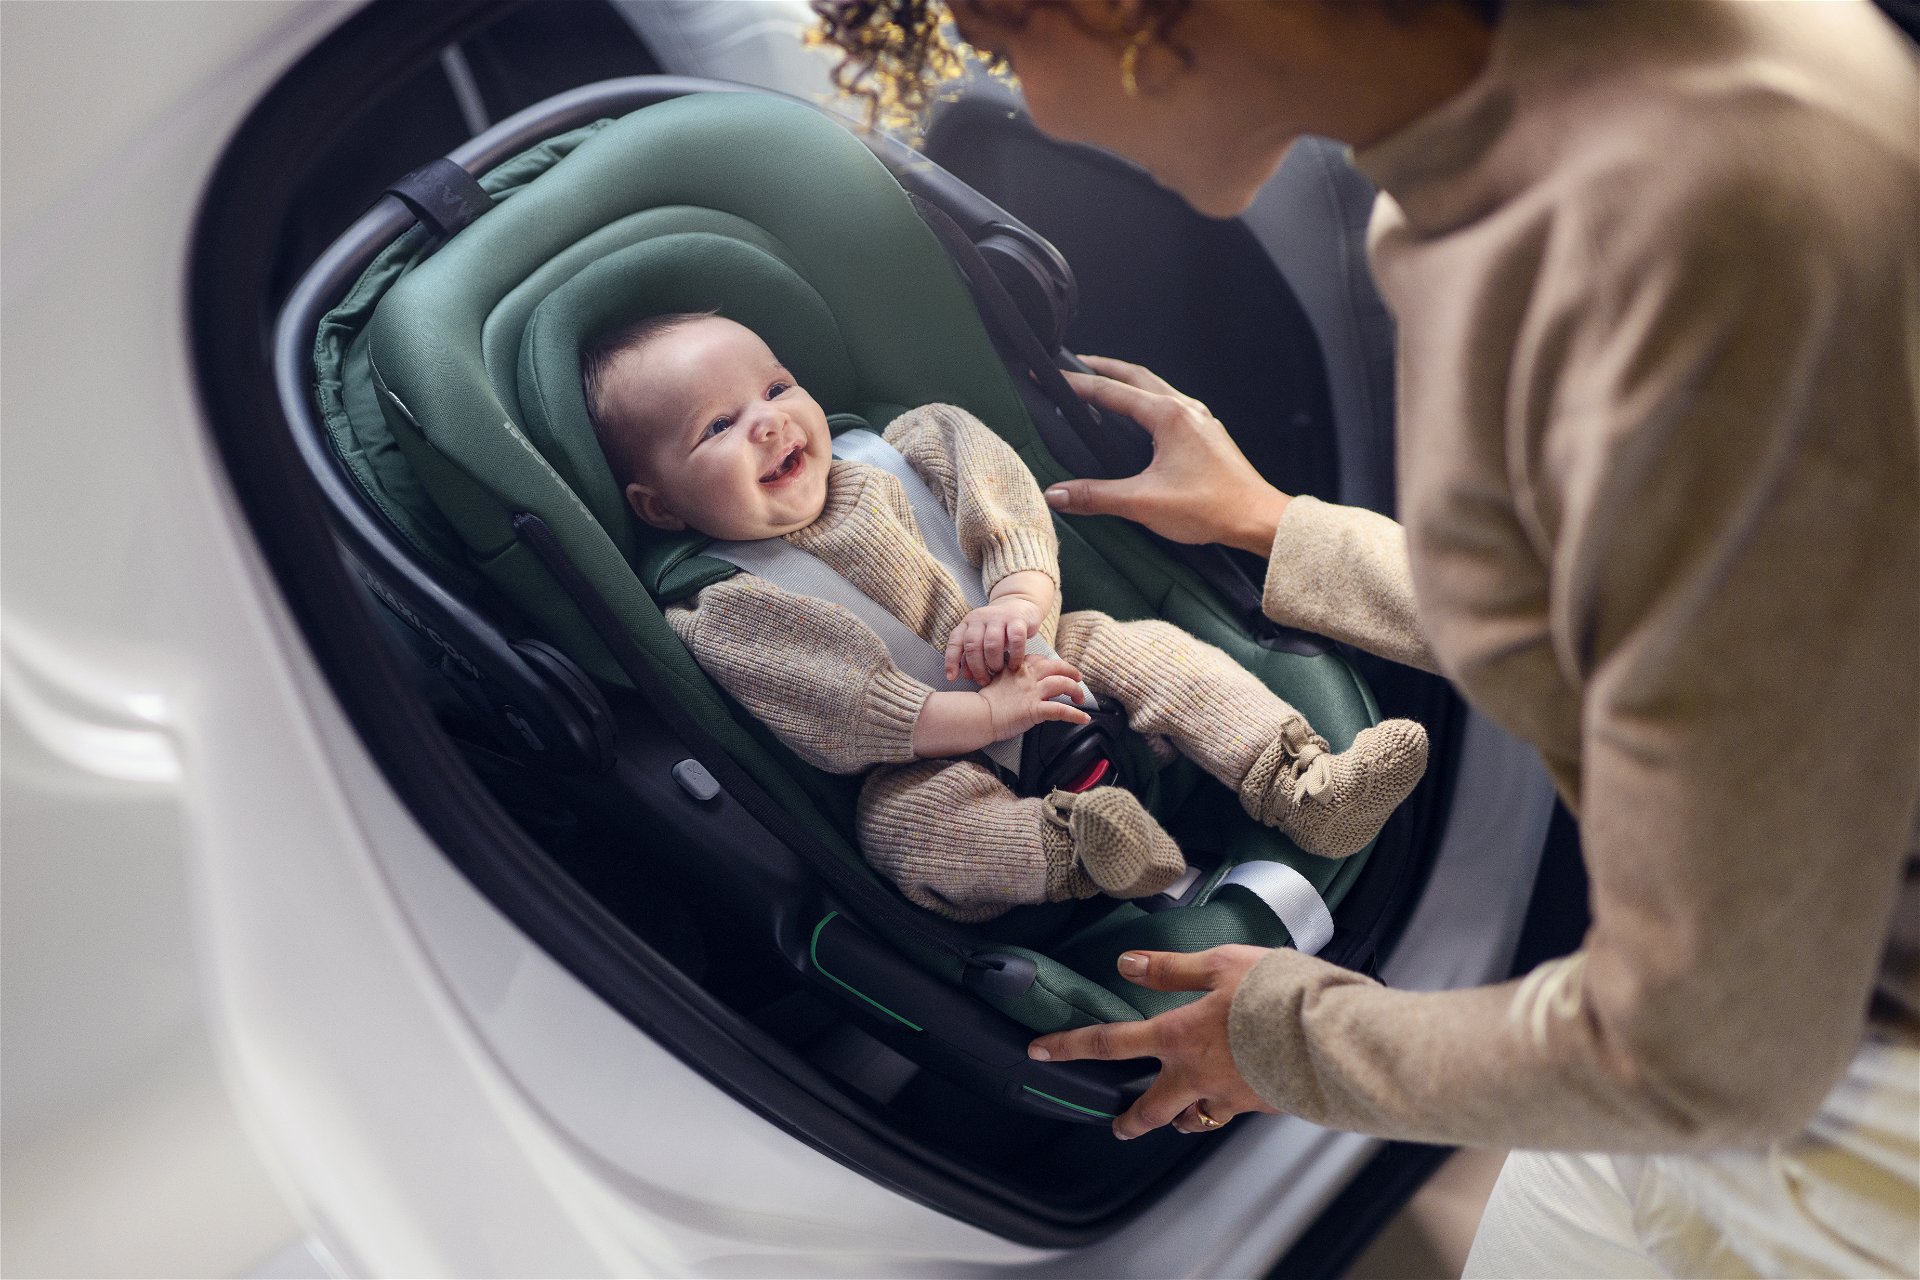 Sièges d'auto de sécurité pour enfants avec harnais à 5 points Systerms  amovible lavable pour les enfants âgés de 4 à 8 ans